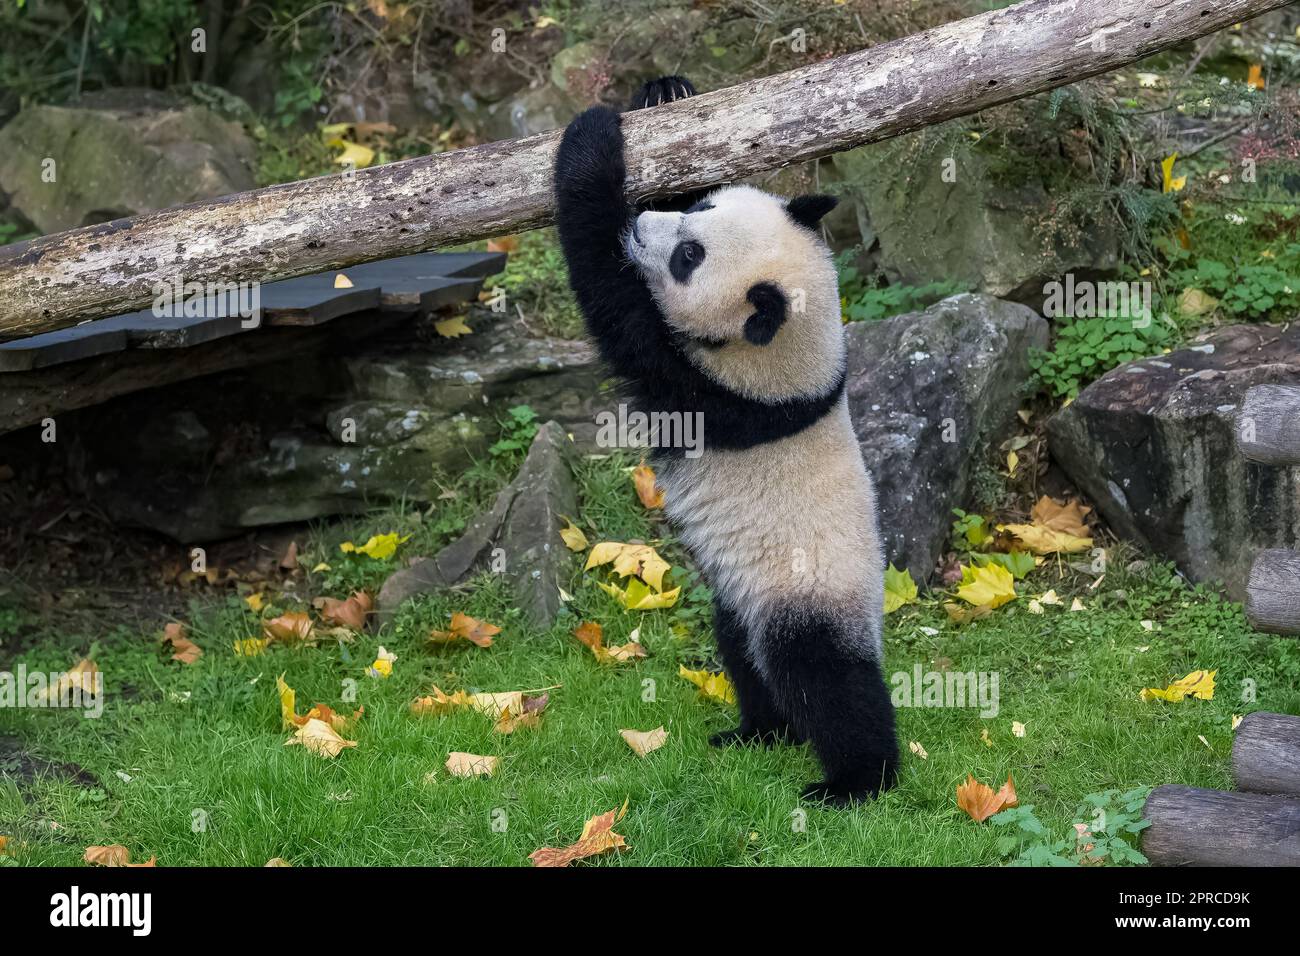 Dos osos panda viajan, como embajadores, de China a Indonesia